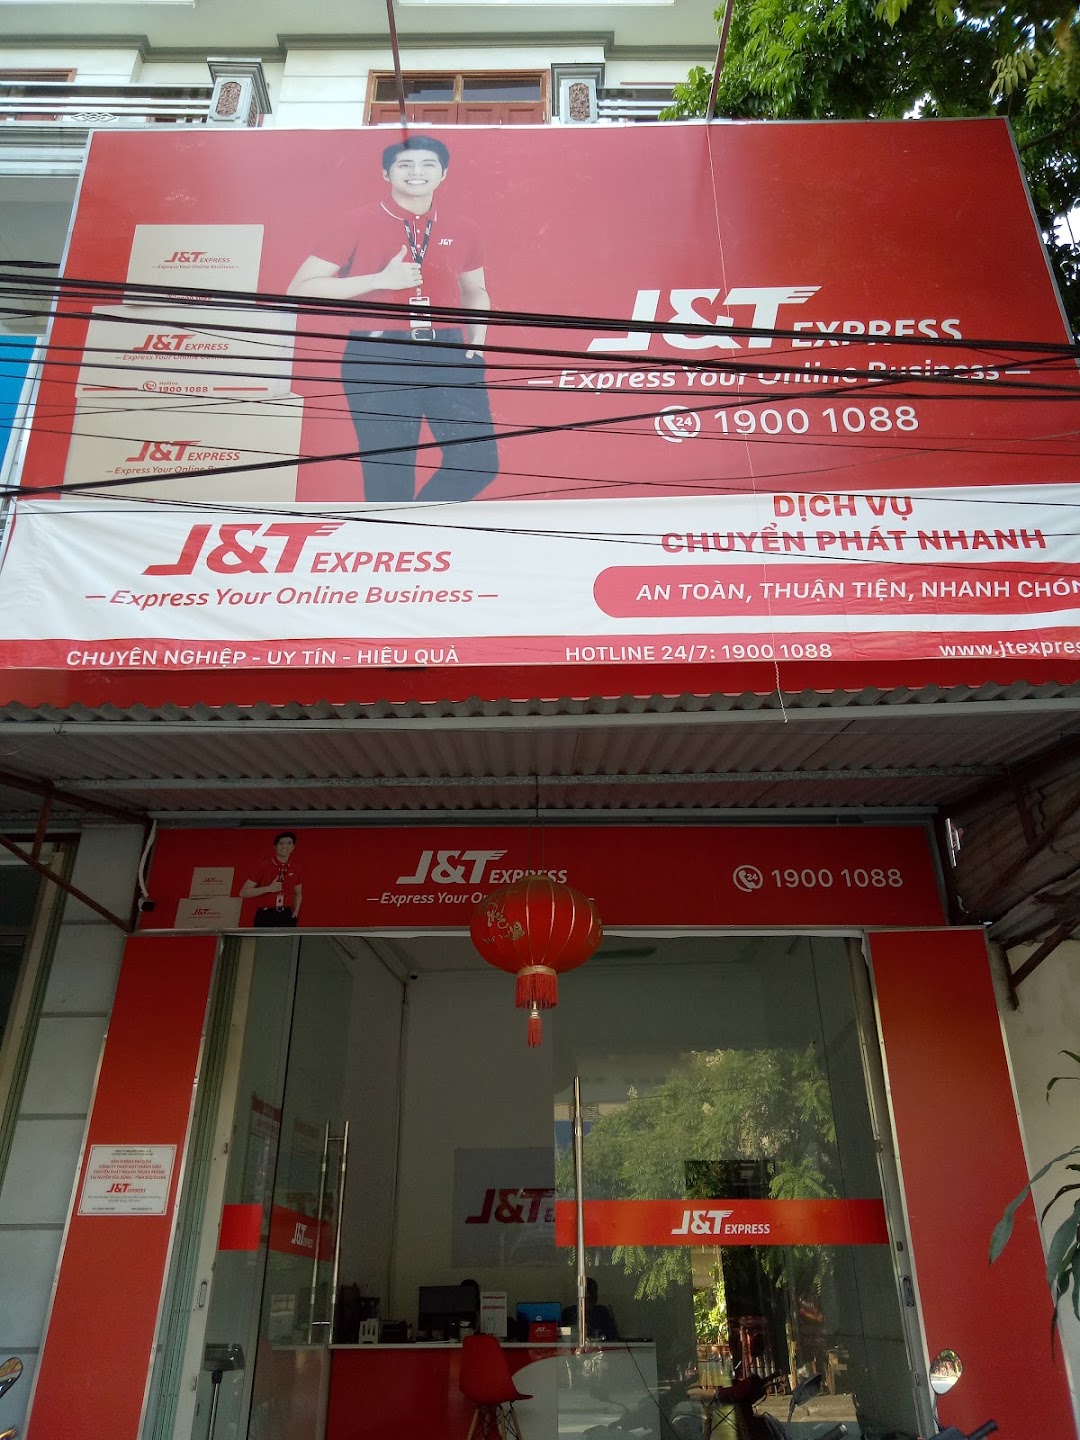 J&T Express Yên Dũng